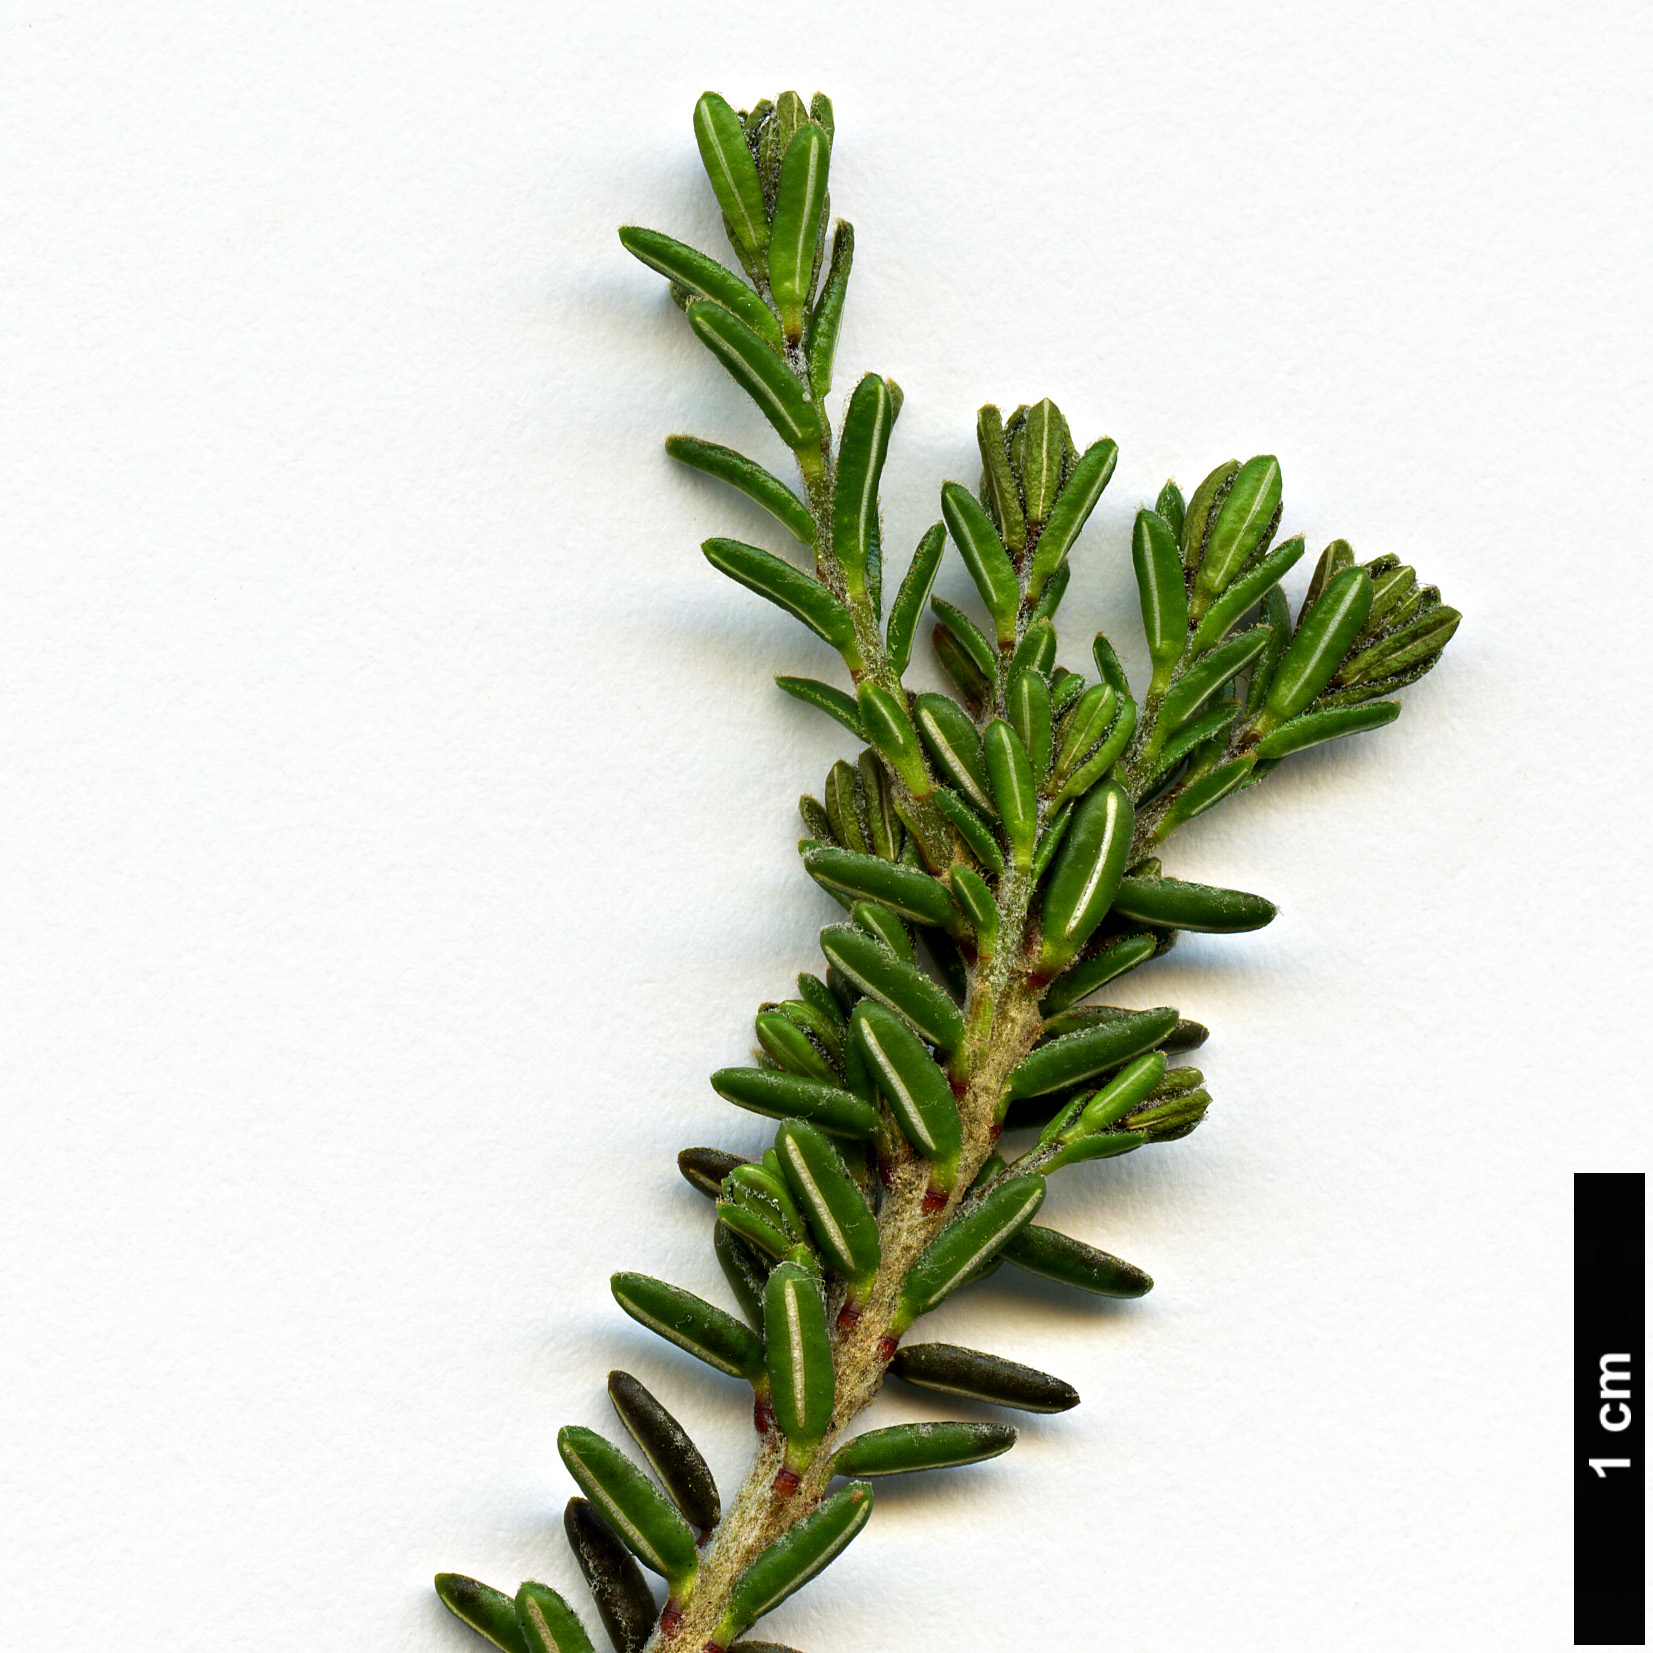 High resolution image: Family: Ericaceae - Genus: Empetrum - Taxon: eamesii